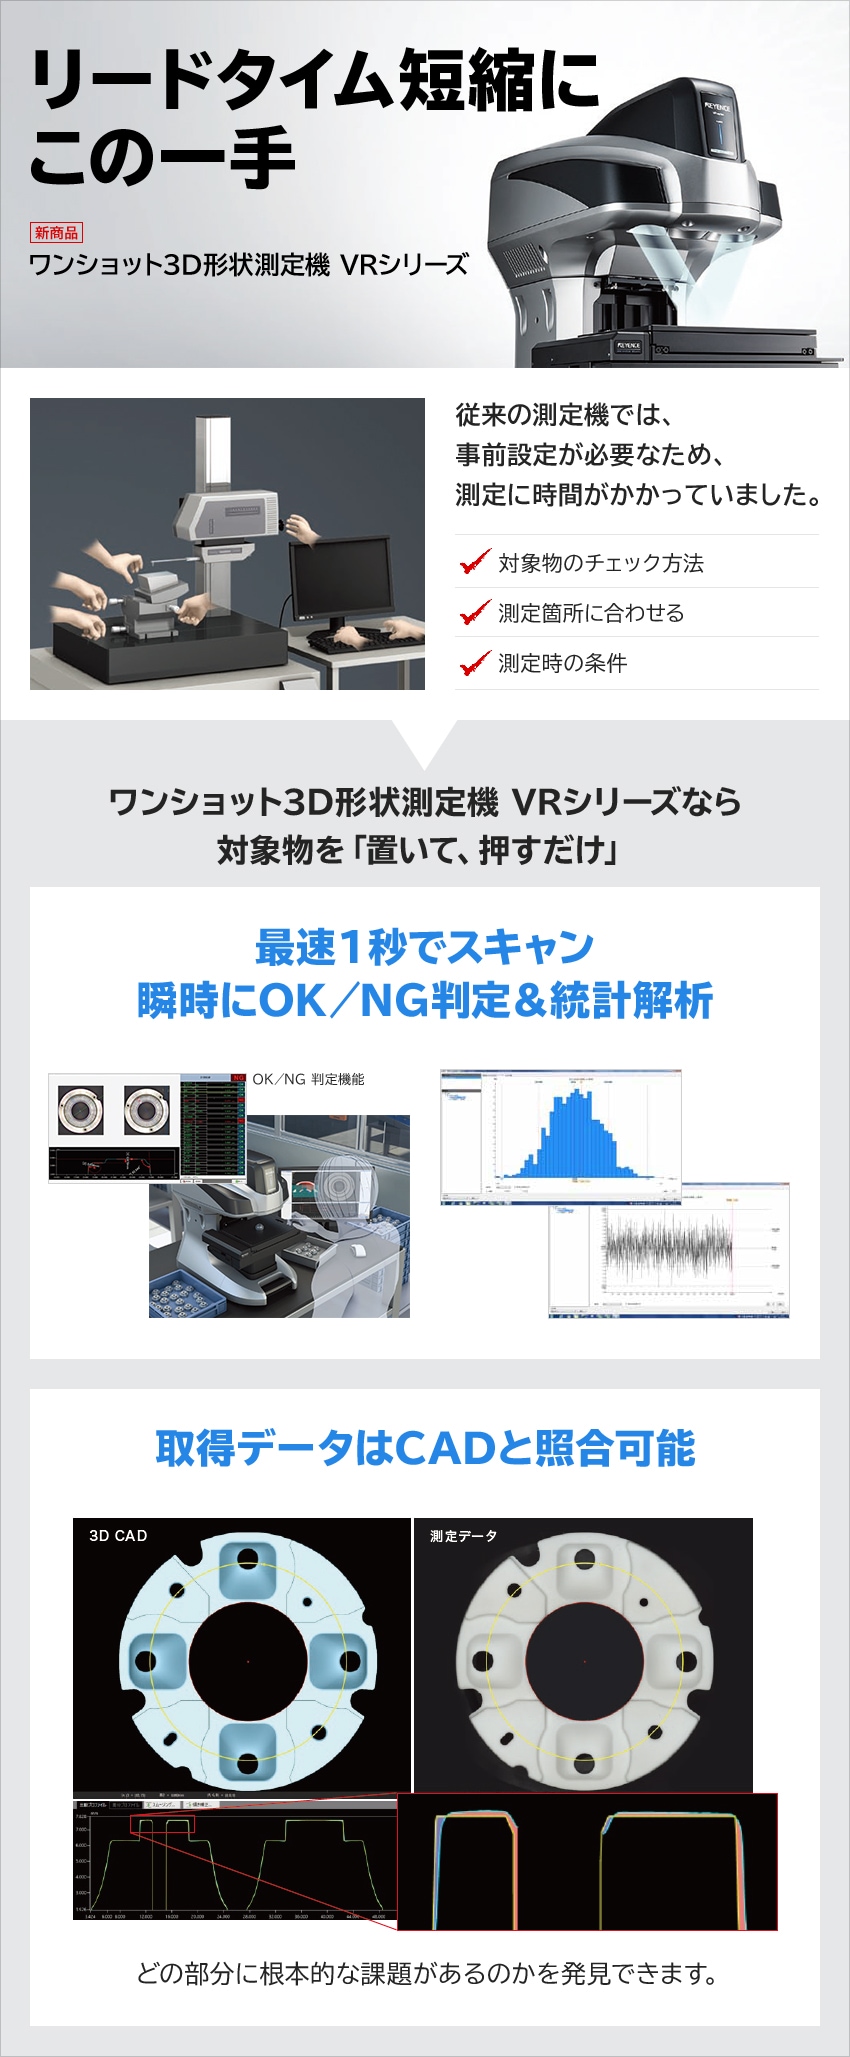 リードタイム短縮にこの一手 新商品 ワンショット3D形状測定機 VRシリーズ